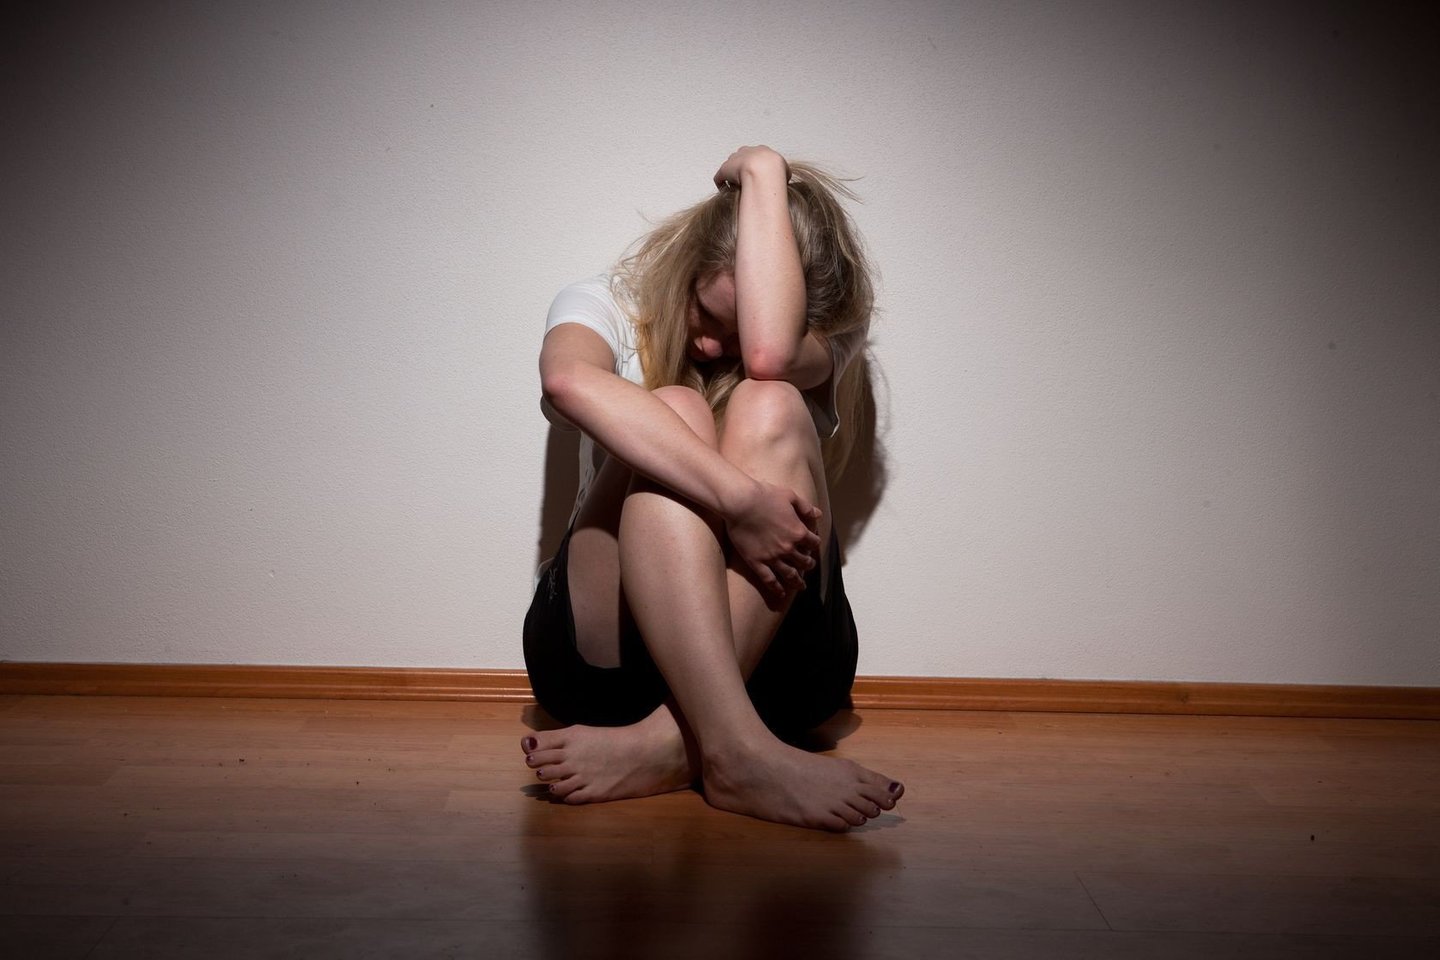 Psichiatrai teigia, kad labai dažnai liūdesys arba pablogėjusi nuotaika yra tik vienas iš depresijos simptomų.  <br>123rf nuotr.